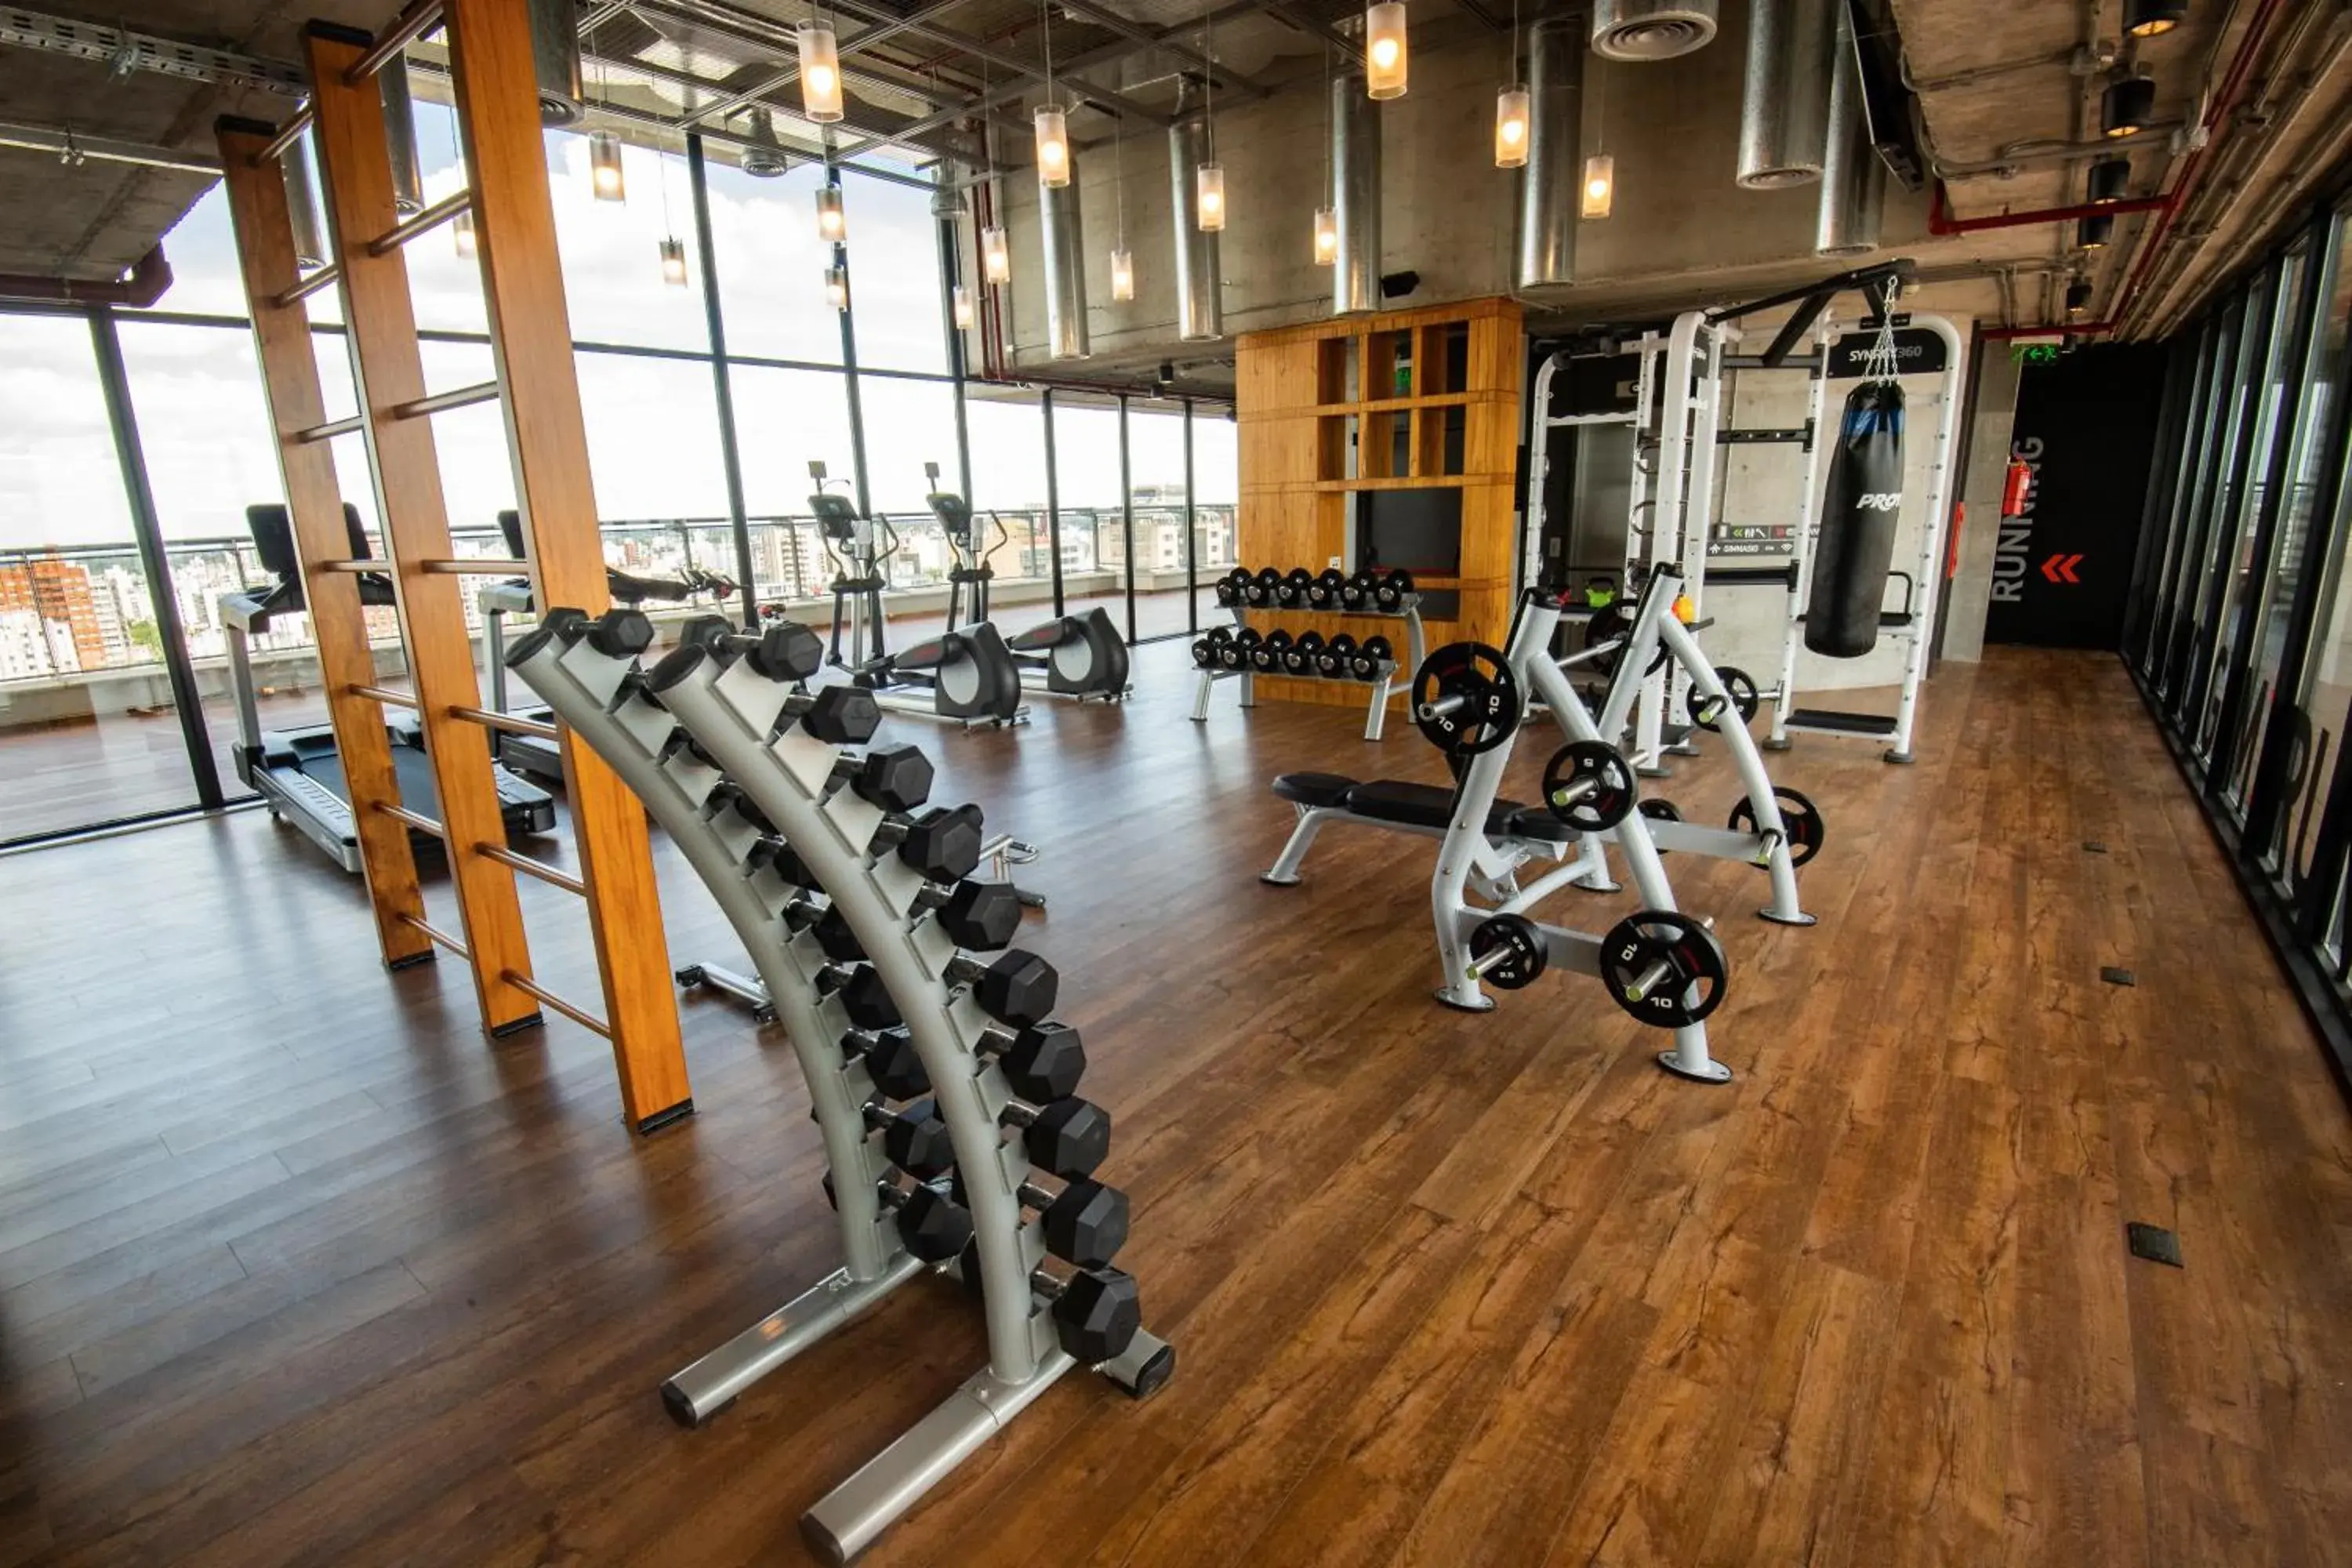 Fitness centre/facilities, Fitness Center/Facilities in Grand Brizo La Plata